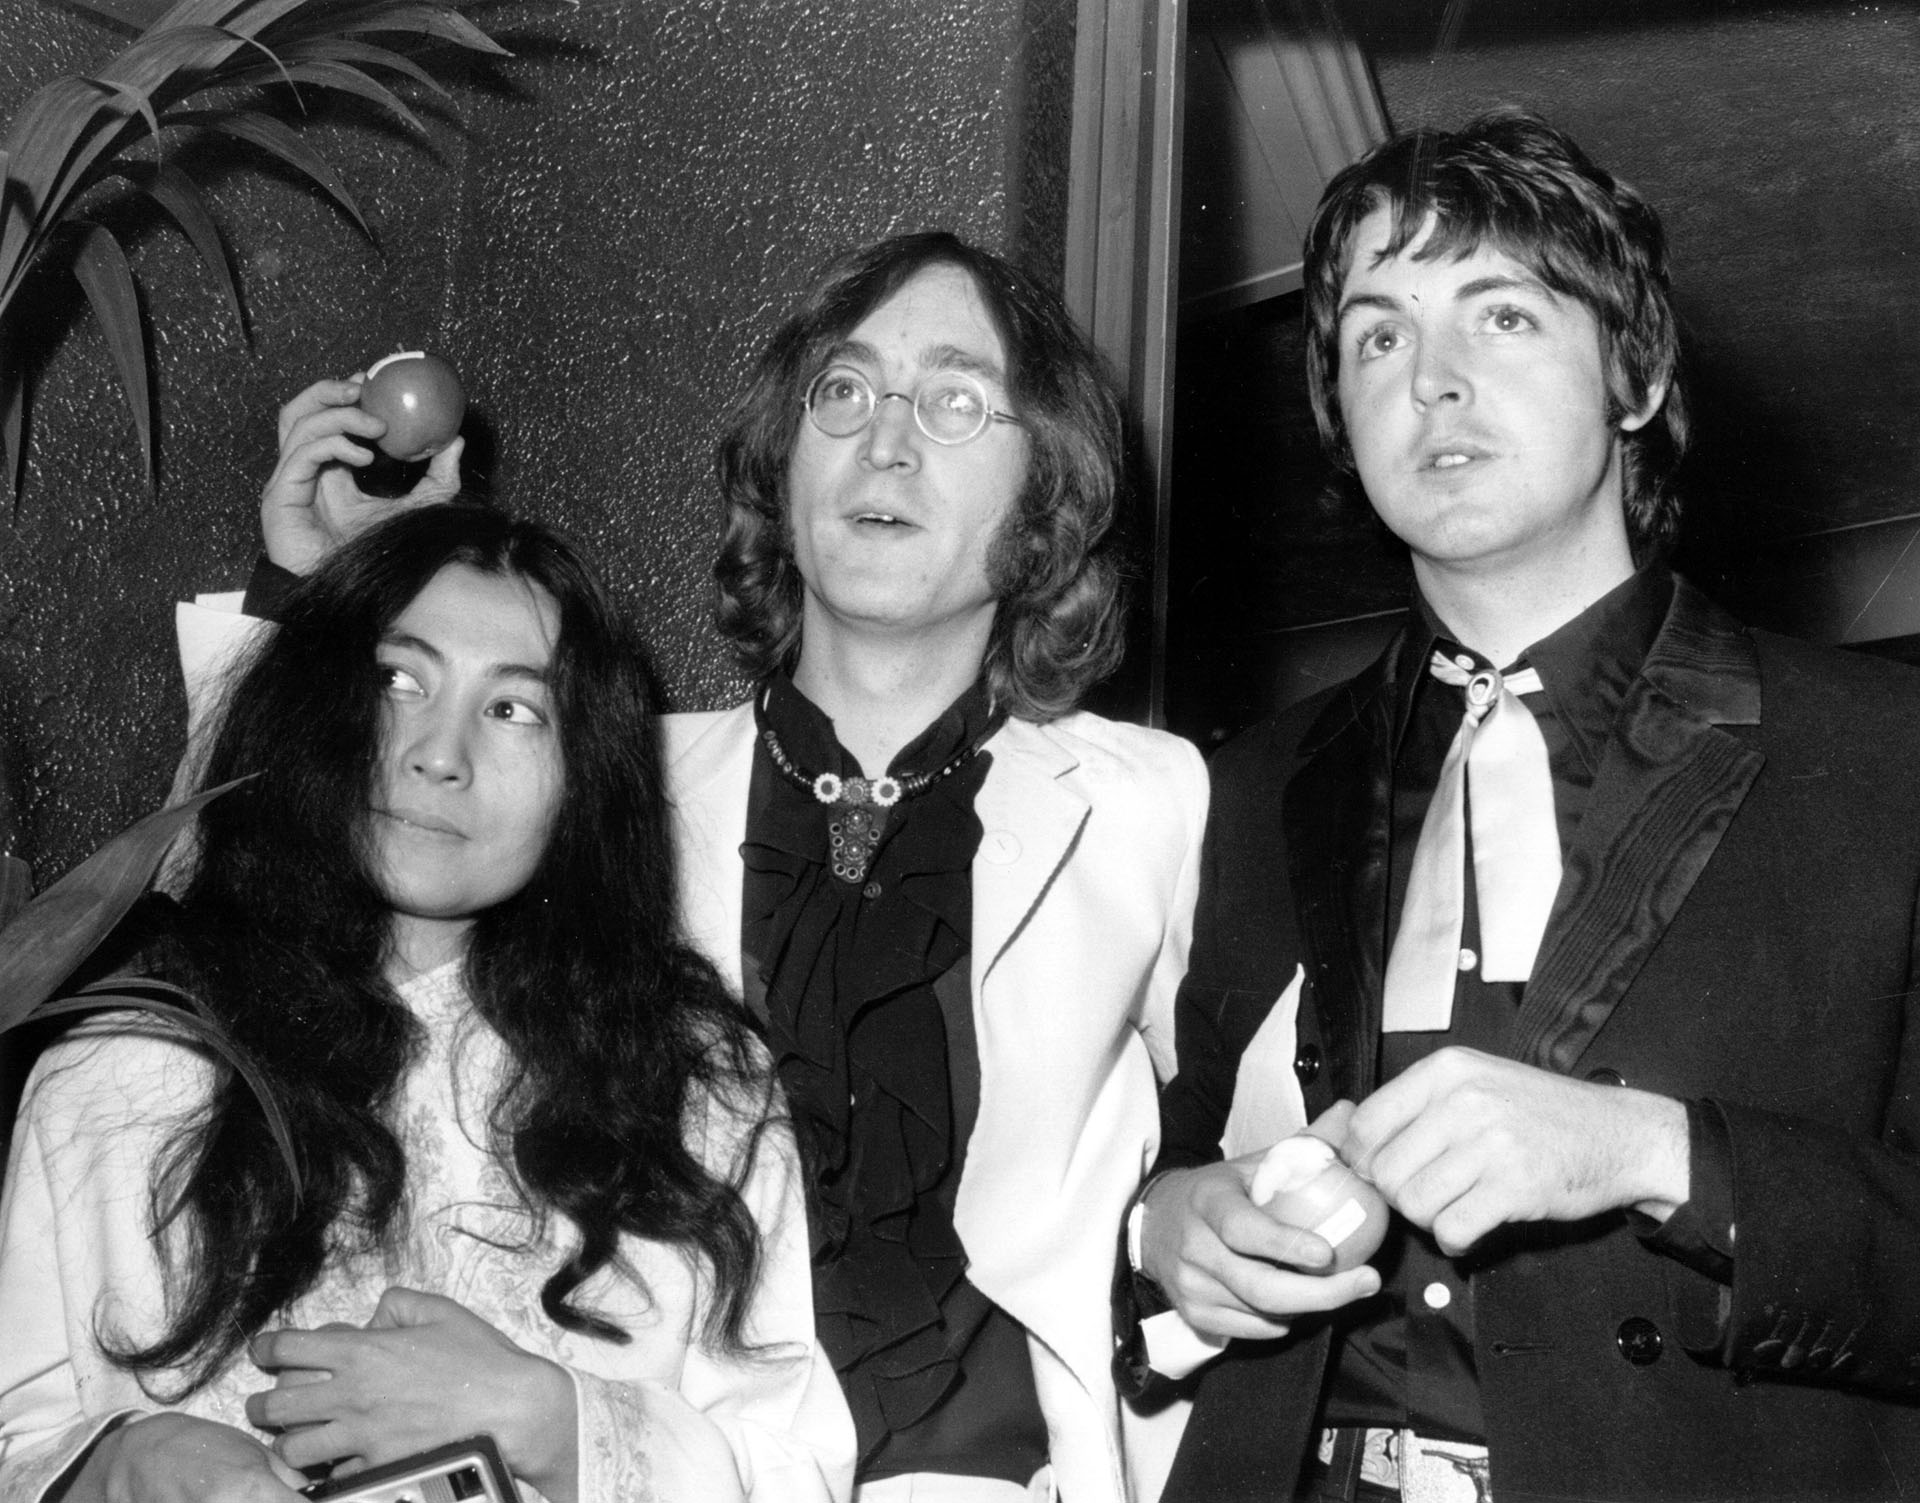 La letras que componían Lennon y McCartney invidualmente, por un acuerdo, aparecían firmadas por los dos. Al principio Paul estaba de acuerdo, pero después no  (Photo by Michael Webb/Keystone/Getty Images)